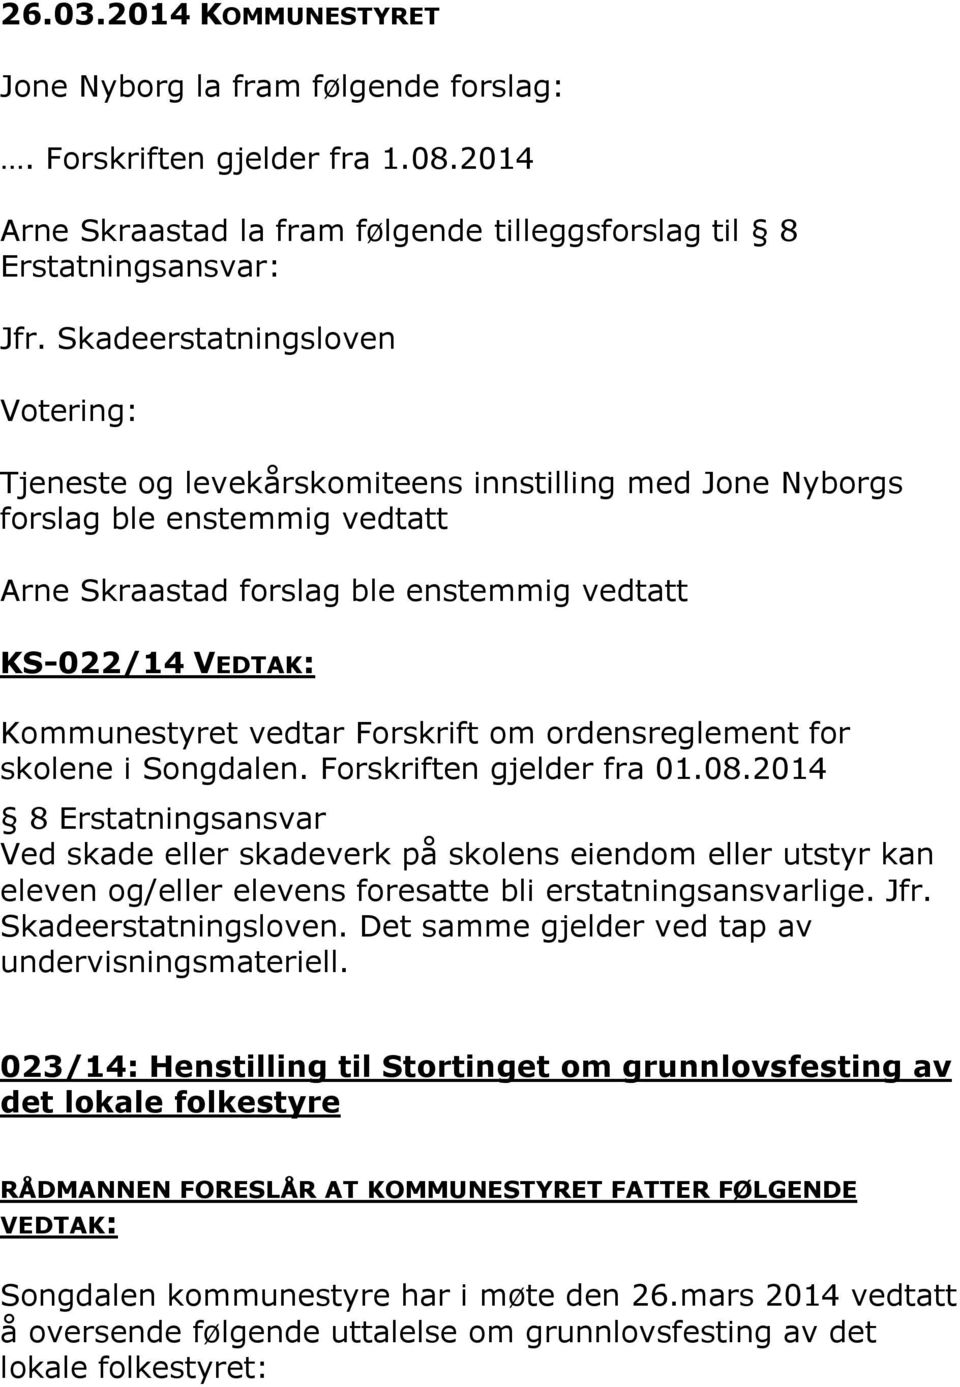 Forskrift om ordensreglement for skolene i Songdalen. Forskriften gjelder fra 01.08.